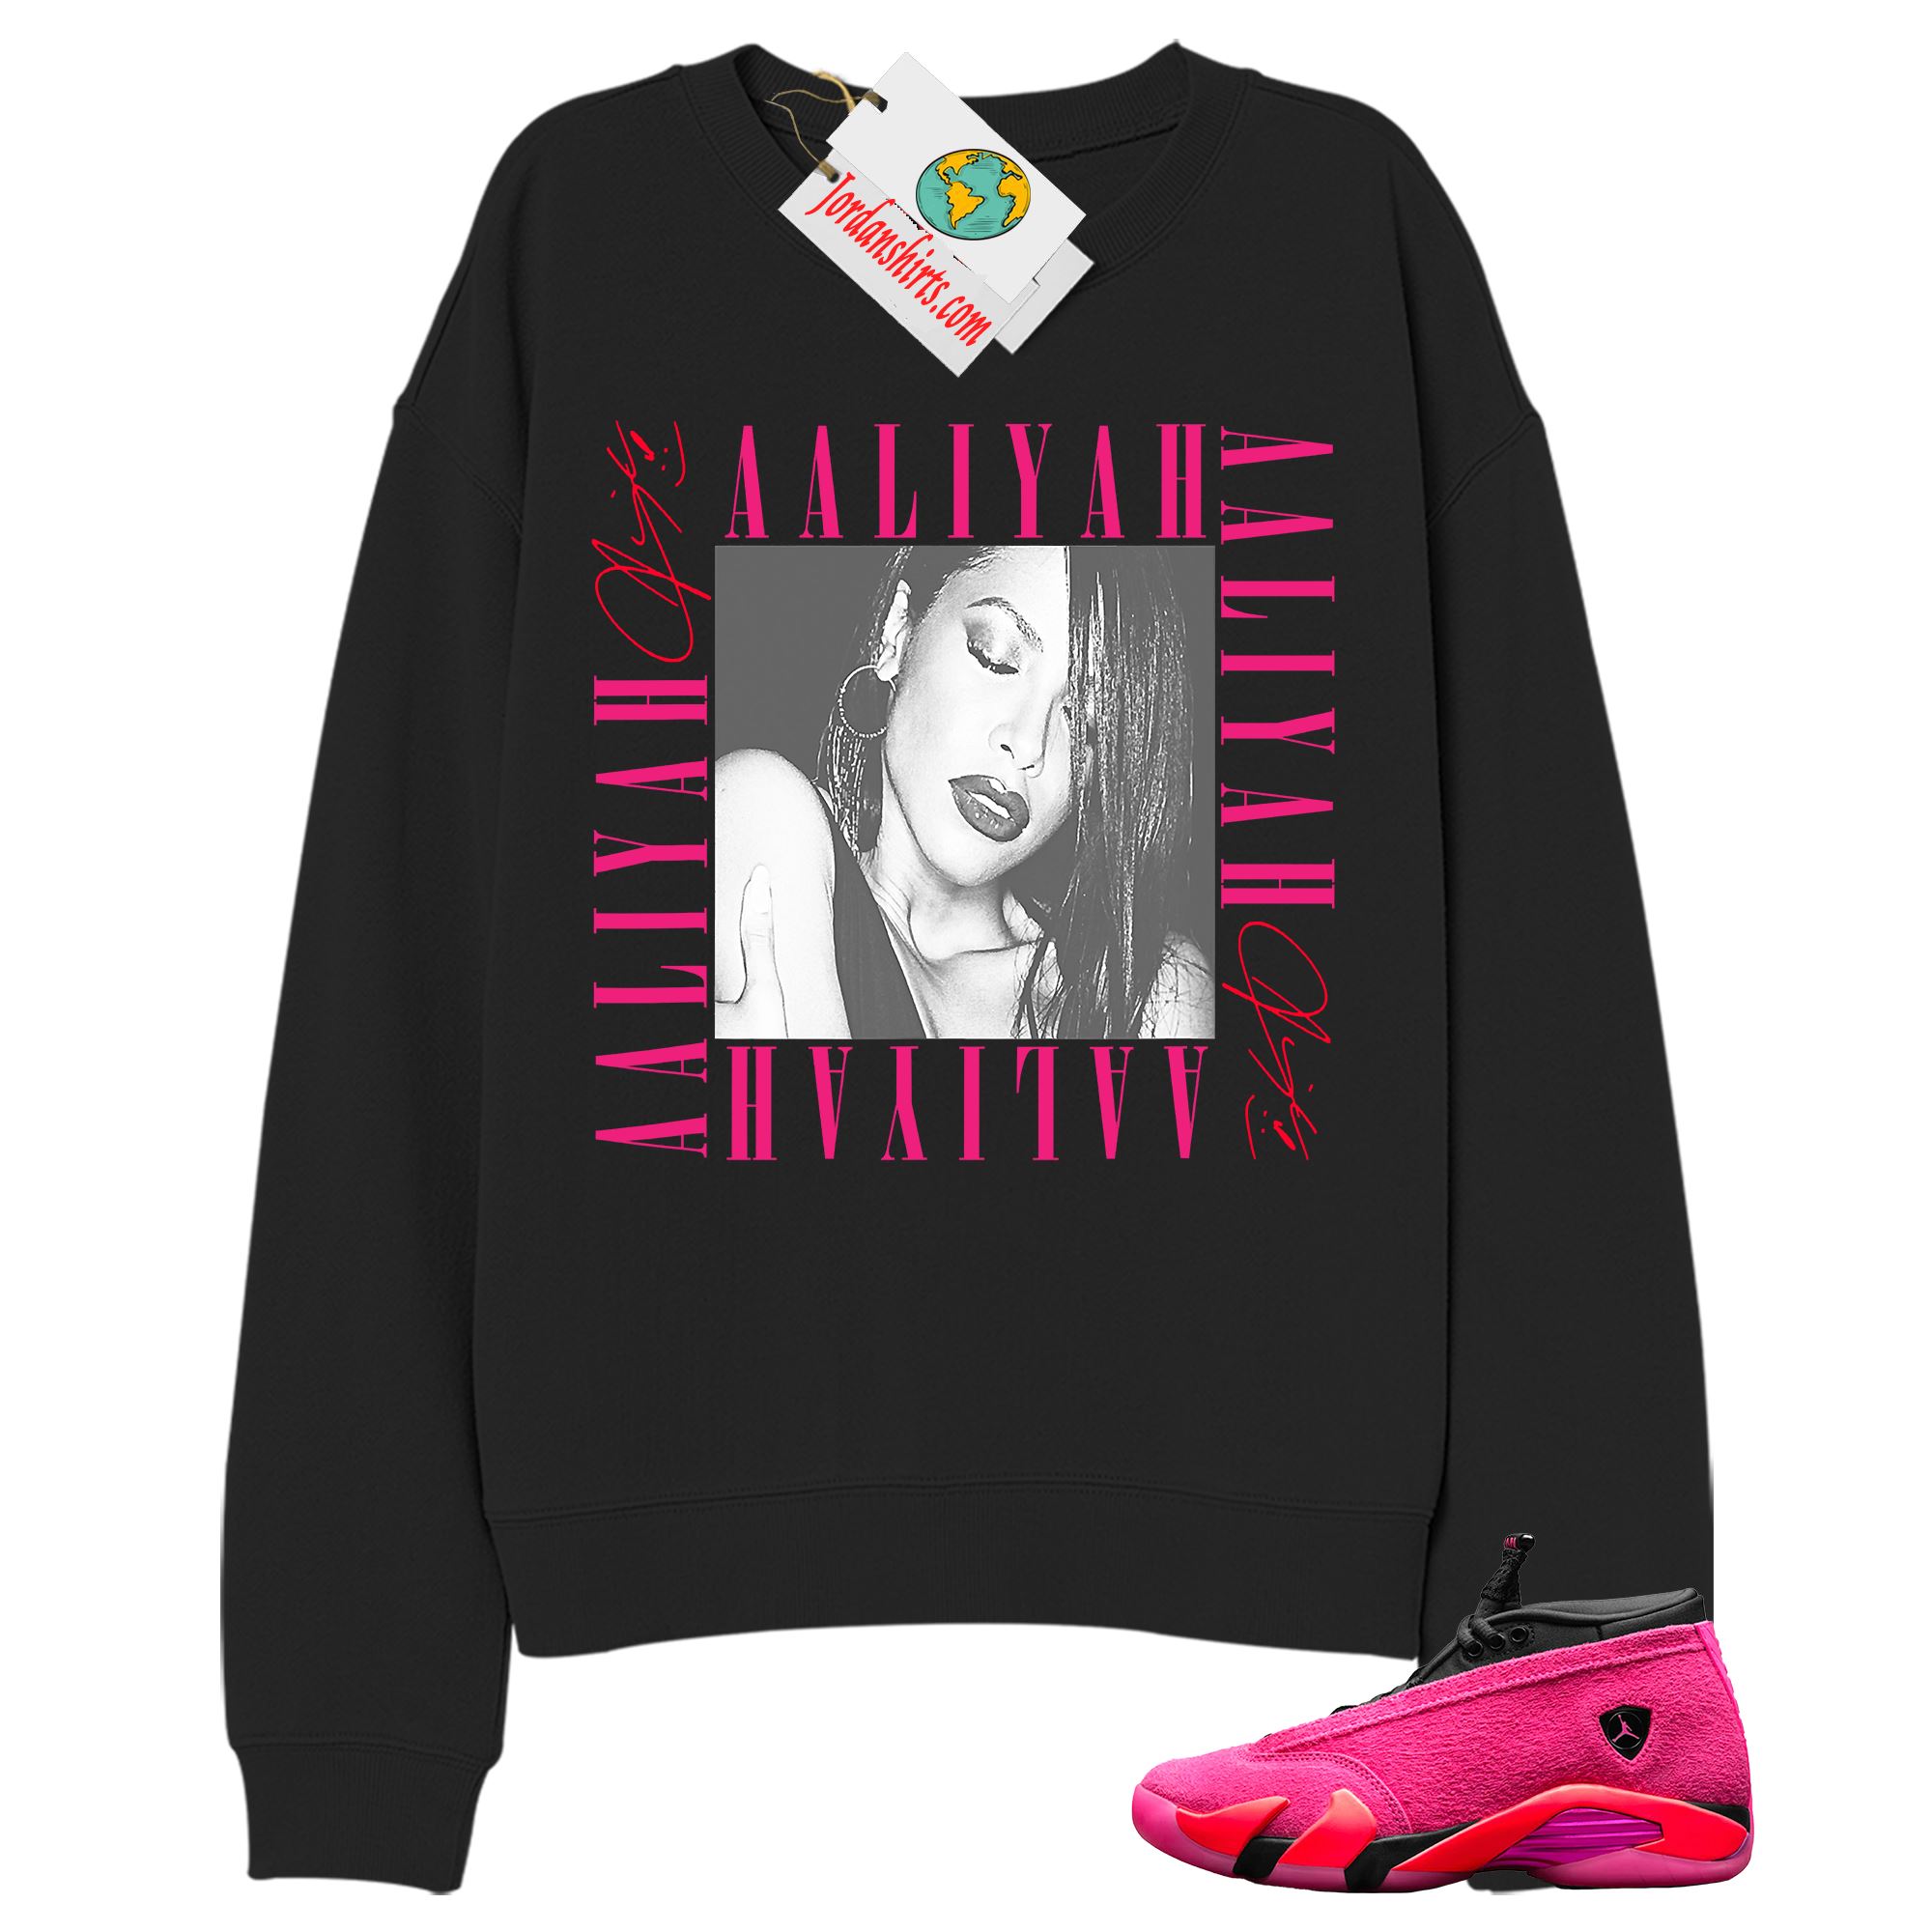 Jordan 14 Sweatshirt, Aaliyah Box Black Sweatshirt Air Jordan 14 Wmns Shocking Pink 14s Plus Size Up To 5xl